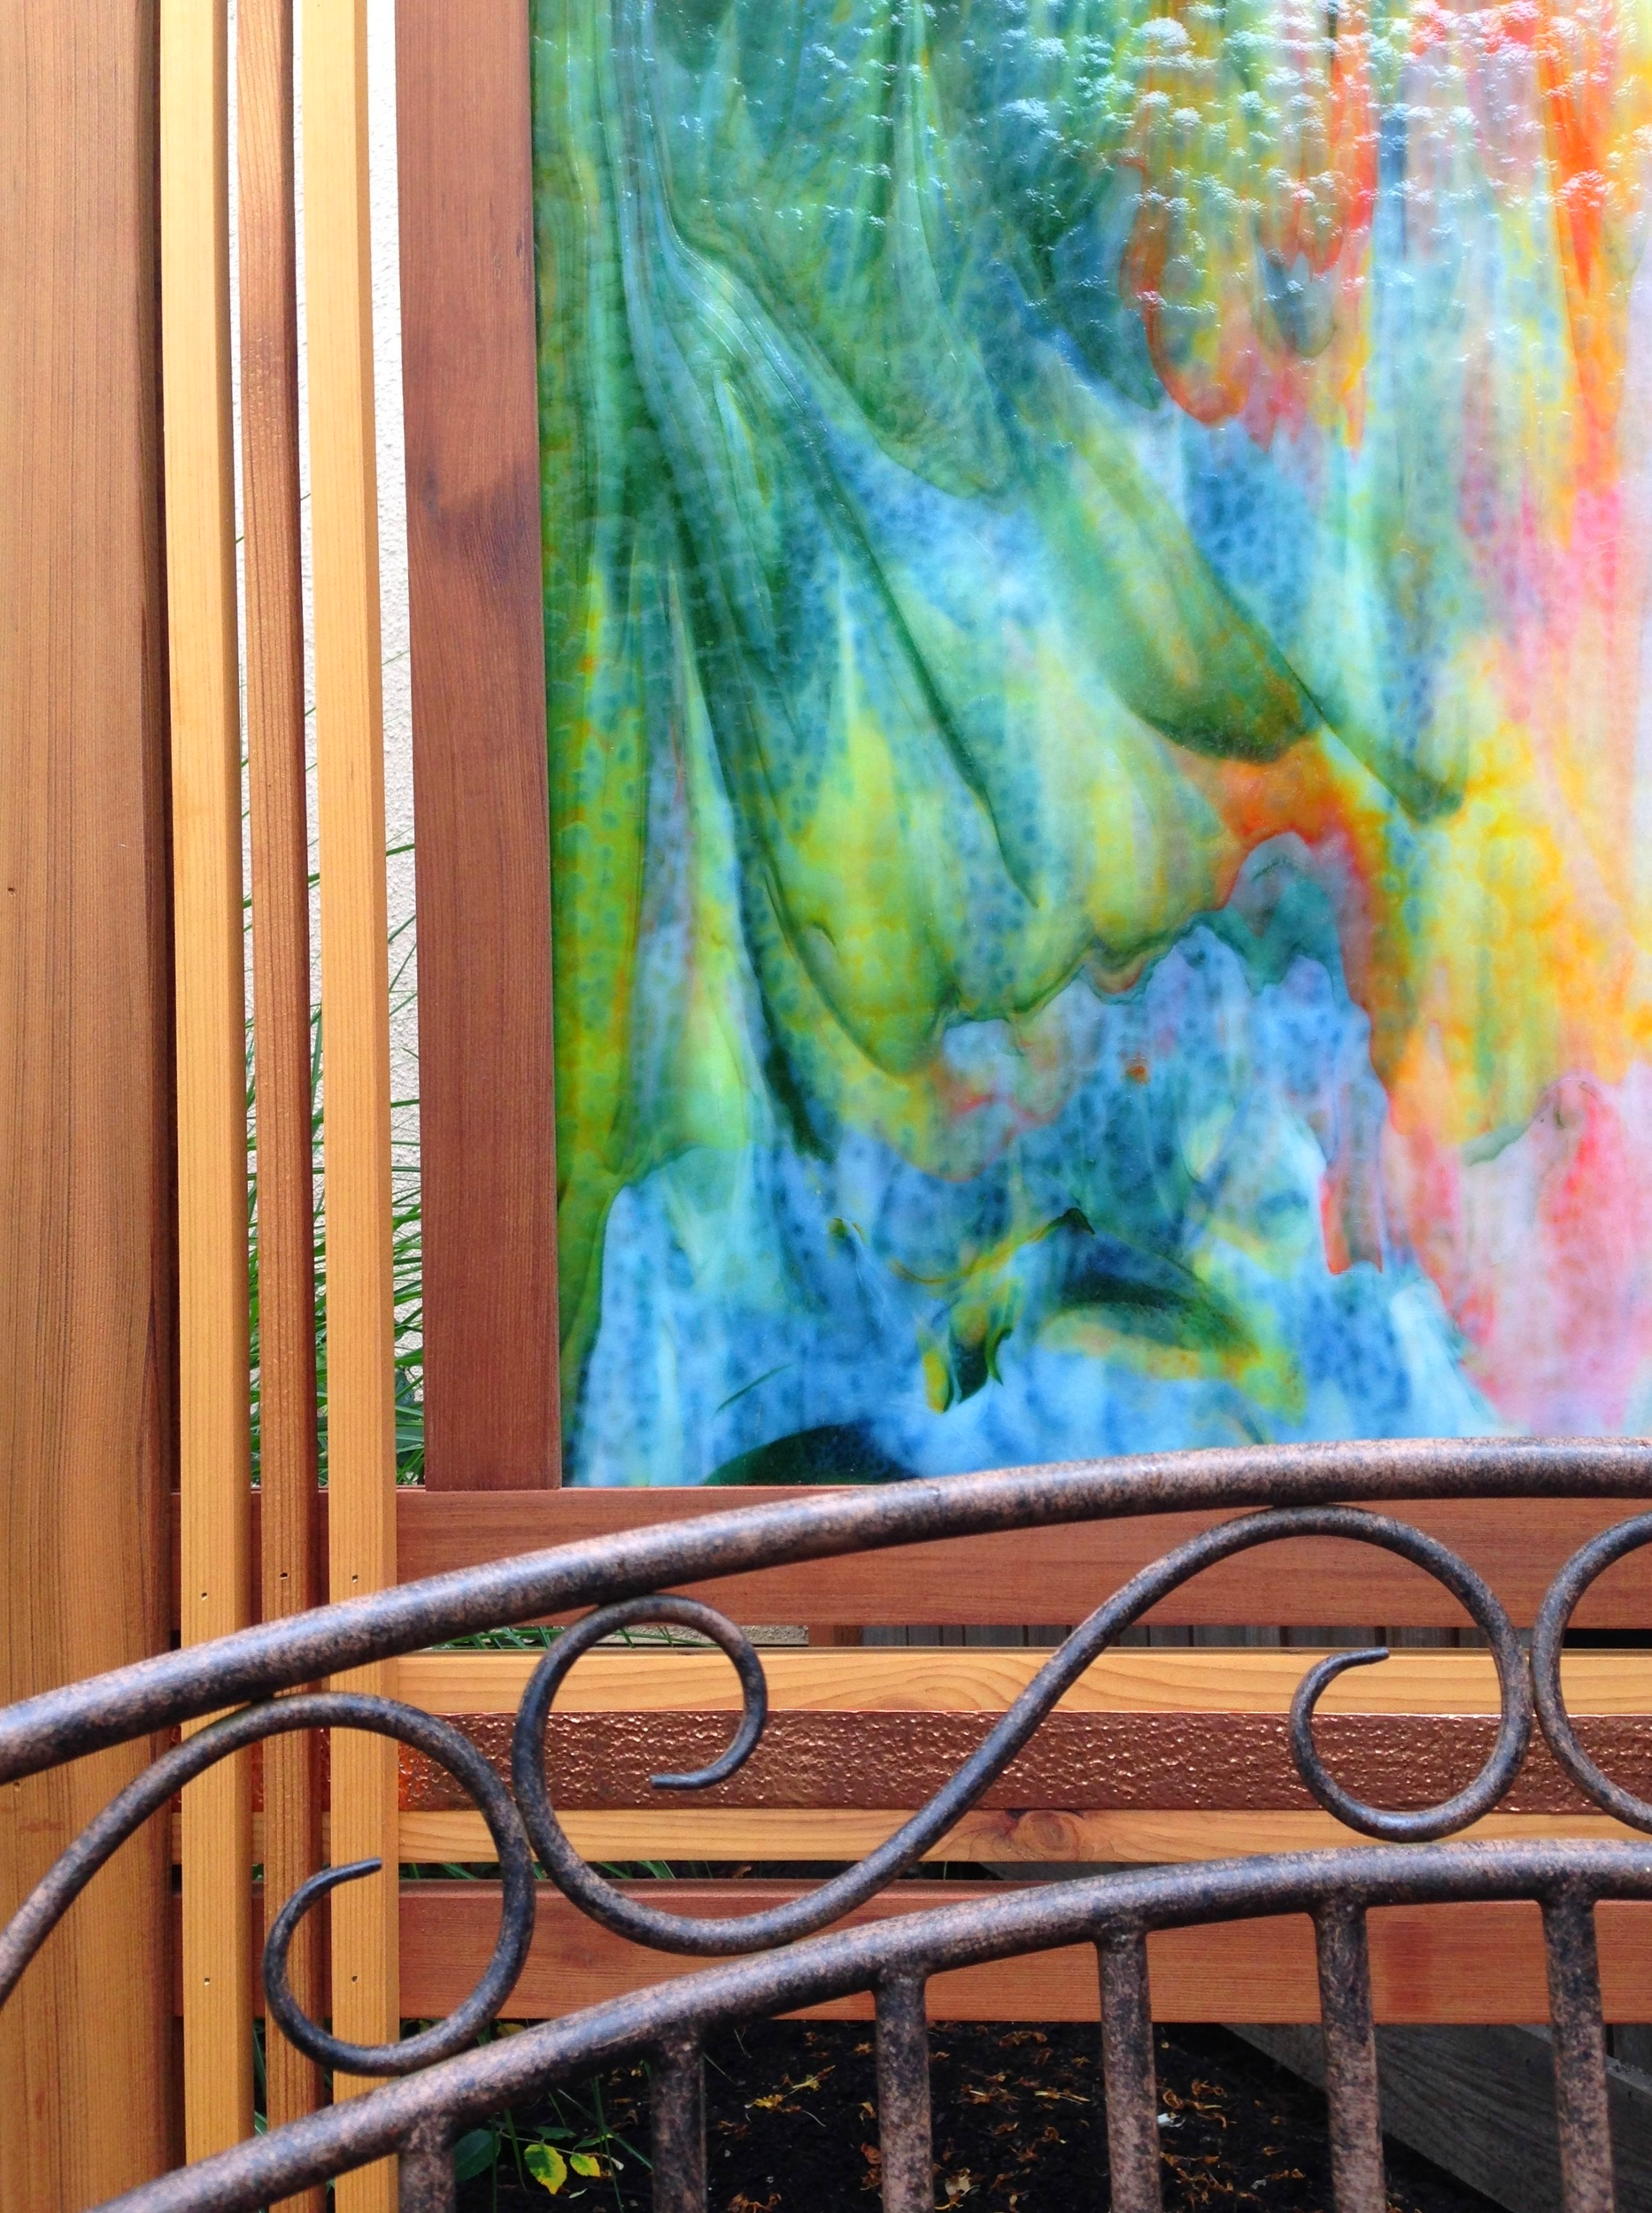 装饰图案的细节。詹姆斯·梅里根(james merrigan)的彩色玻璃屏风(《詹姆斯的花园艺术》)。